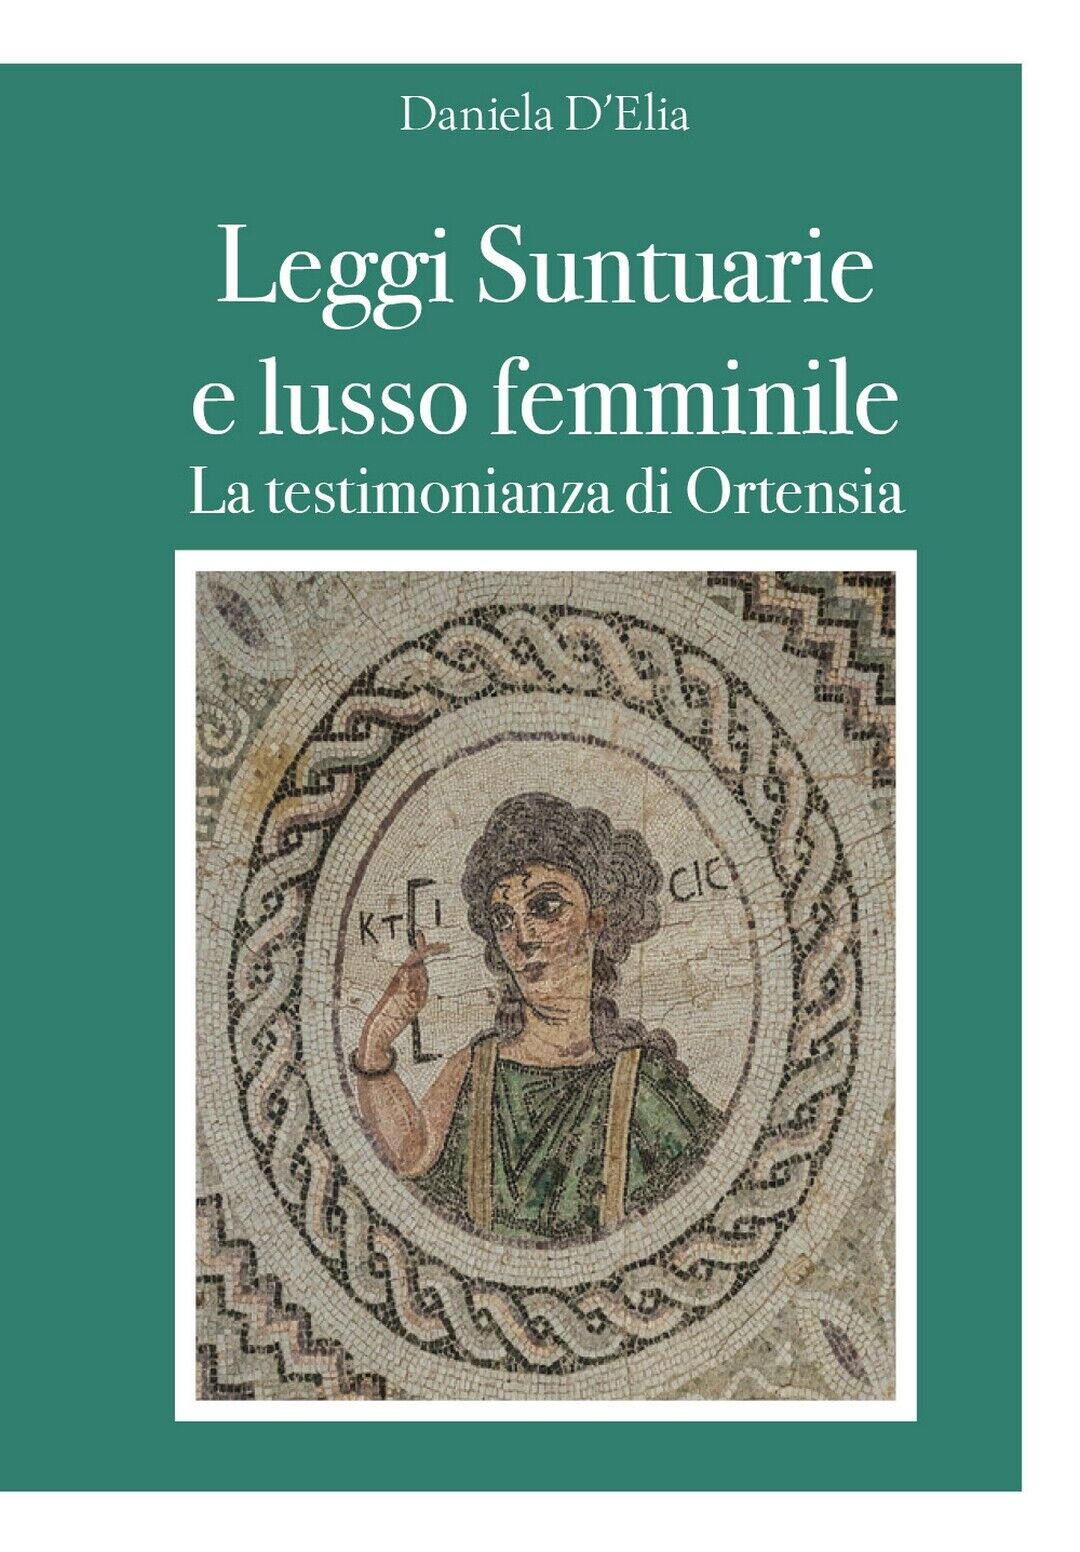 Leggi Suntuarie e lusso femminile - La testimonianza di Ortensia, D. D'Elia